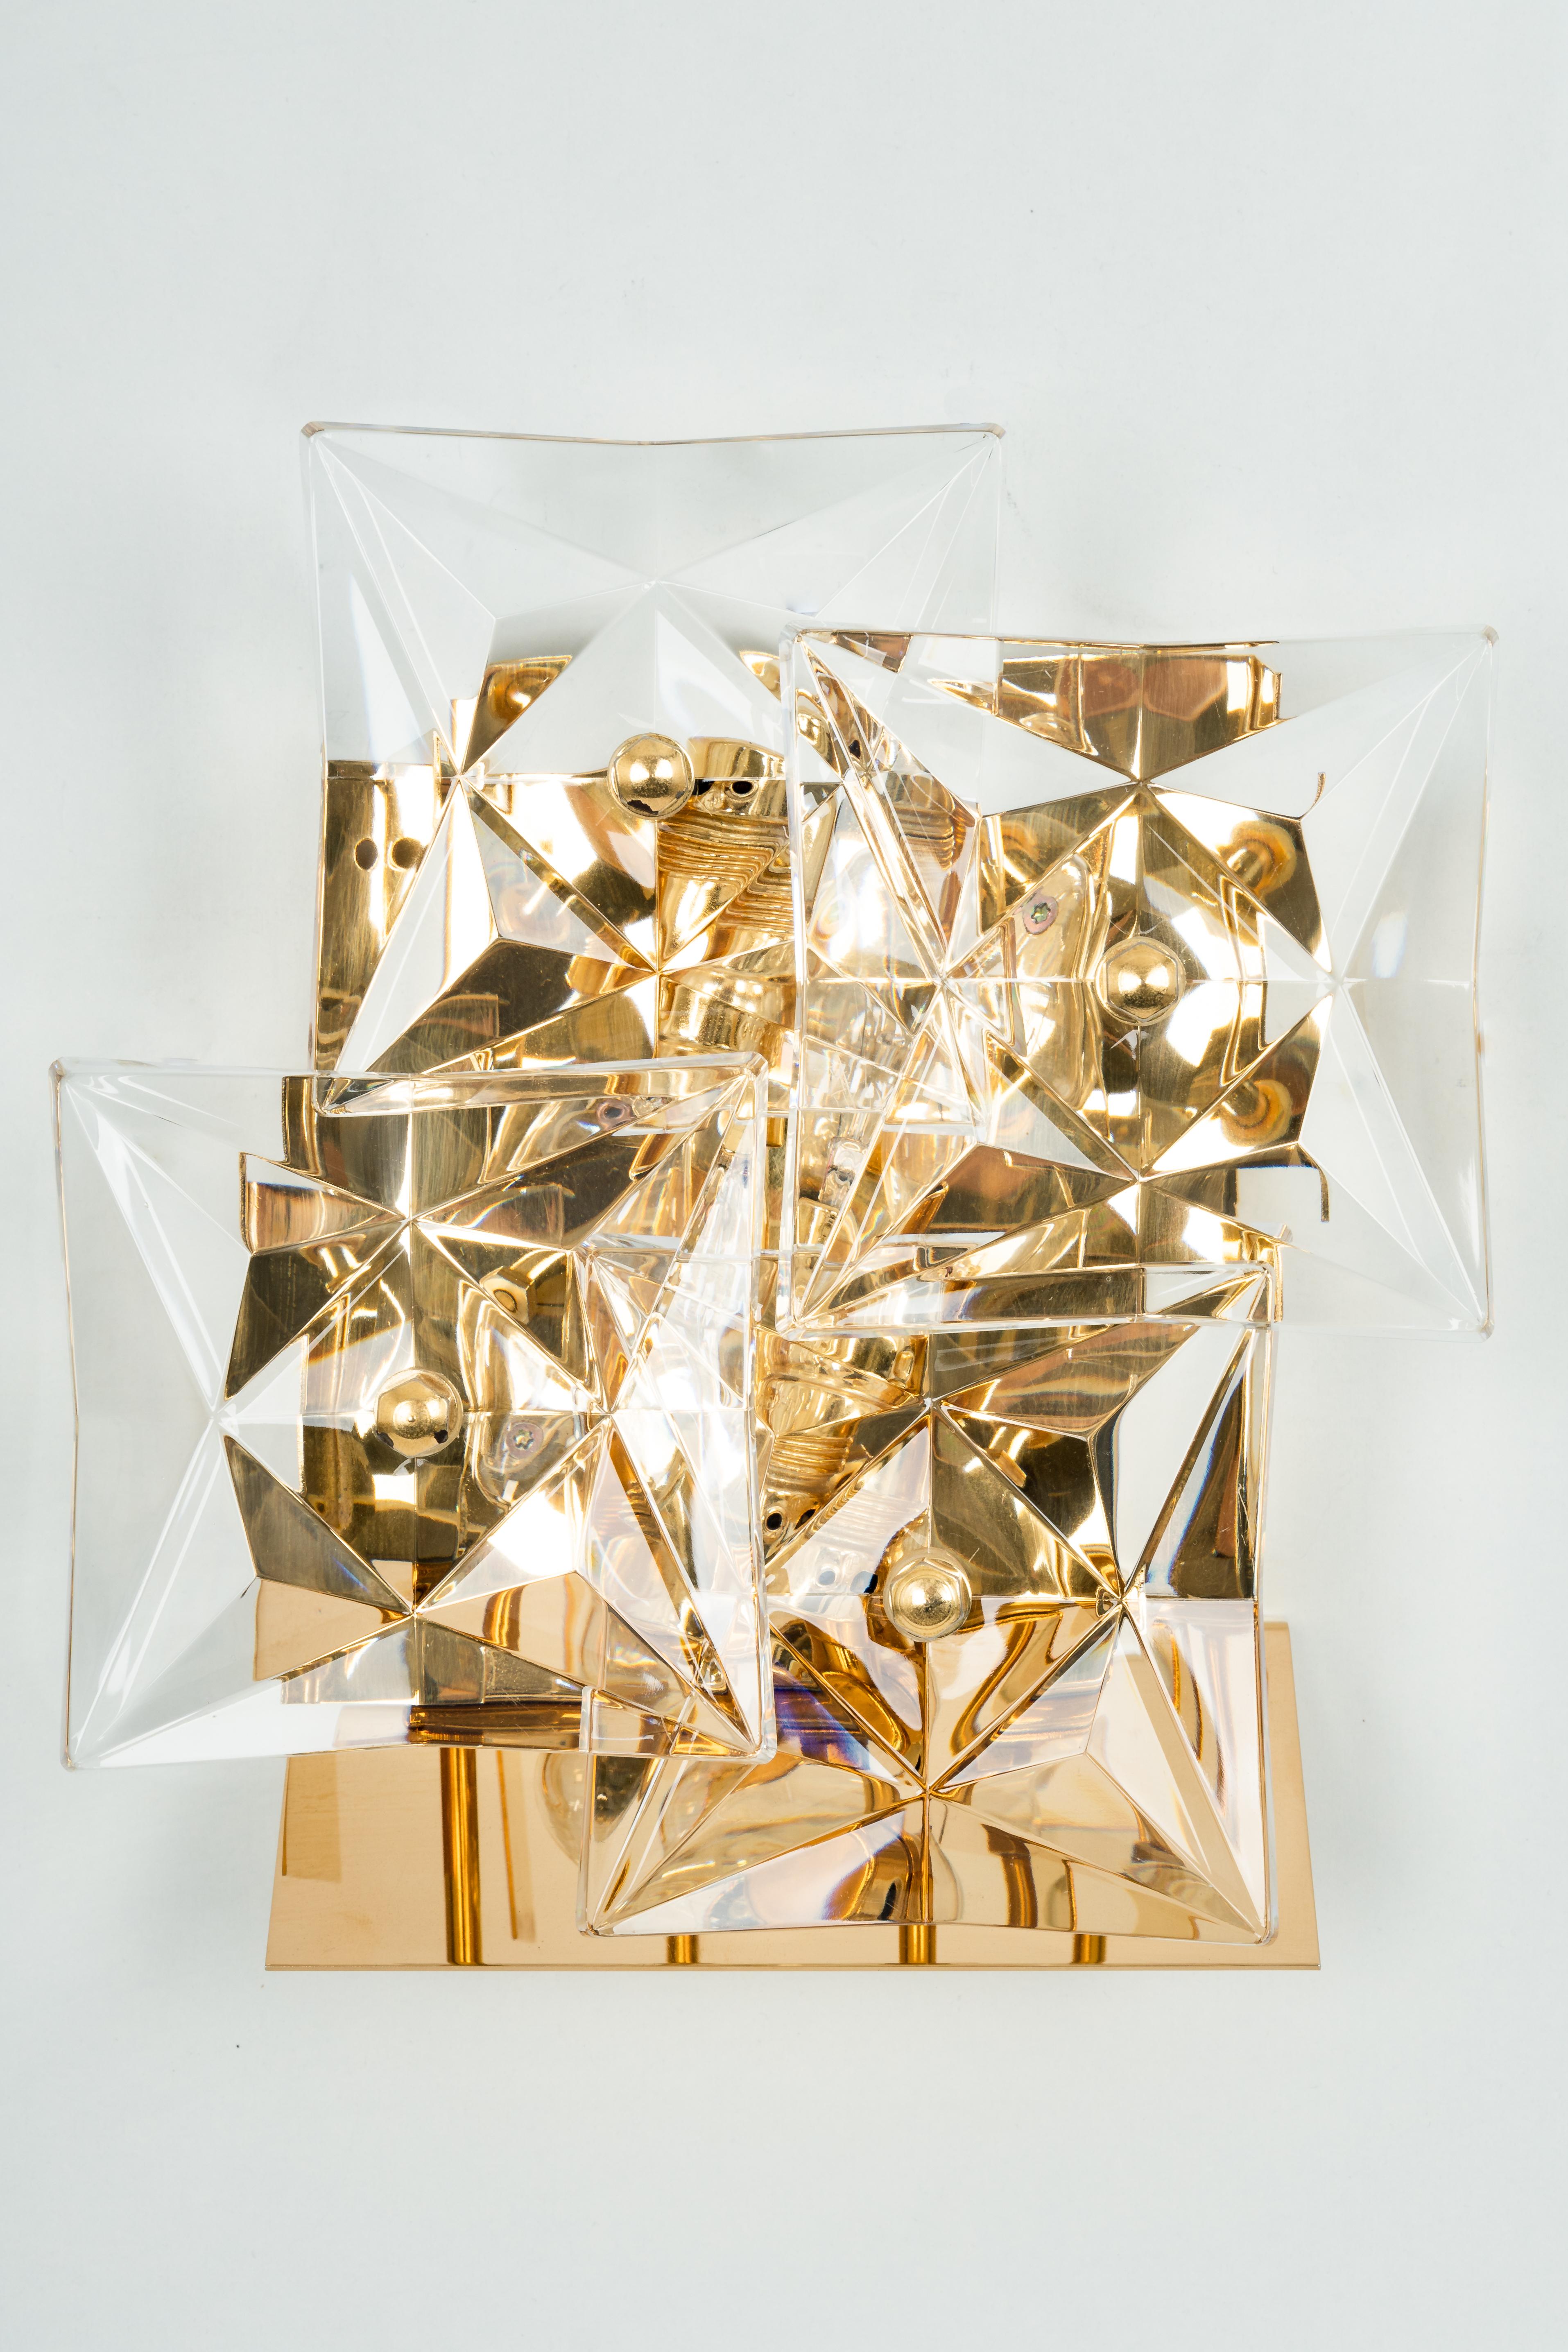 Une étonnante applique dorée avec des verres en cristal, fabriquée par Kinkeldey, Allemagne, vers 1970-1979. Il est composé de pièces en verre de cristal sur un cadre en laiton doré.
De la série : Classique

Le meilleur des années 1970 en